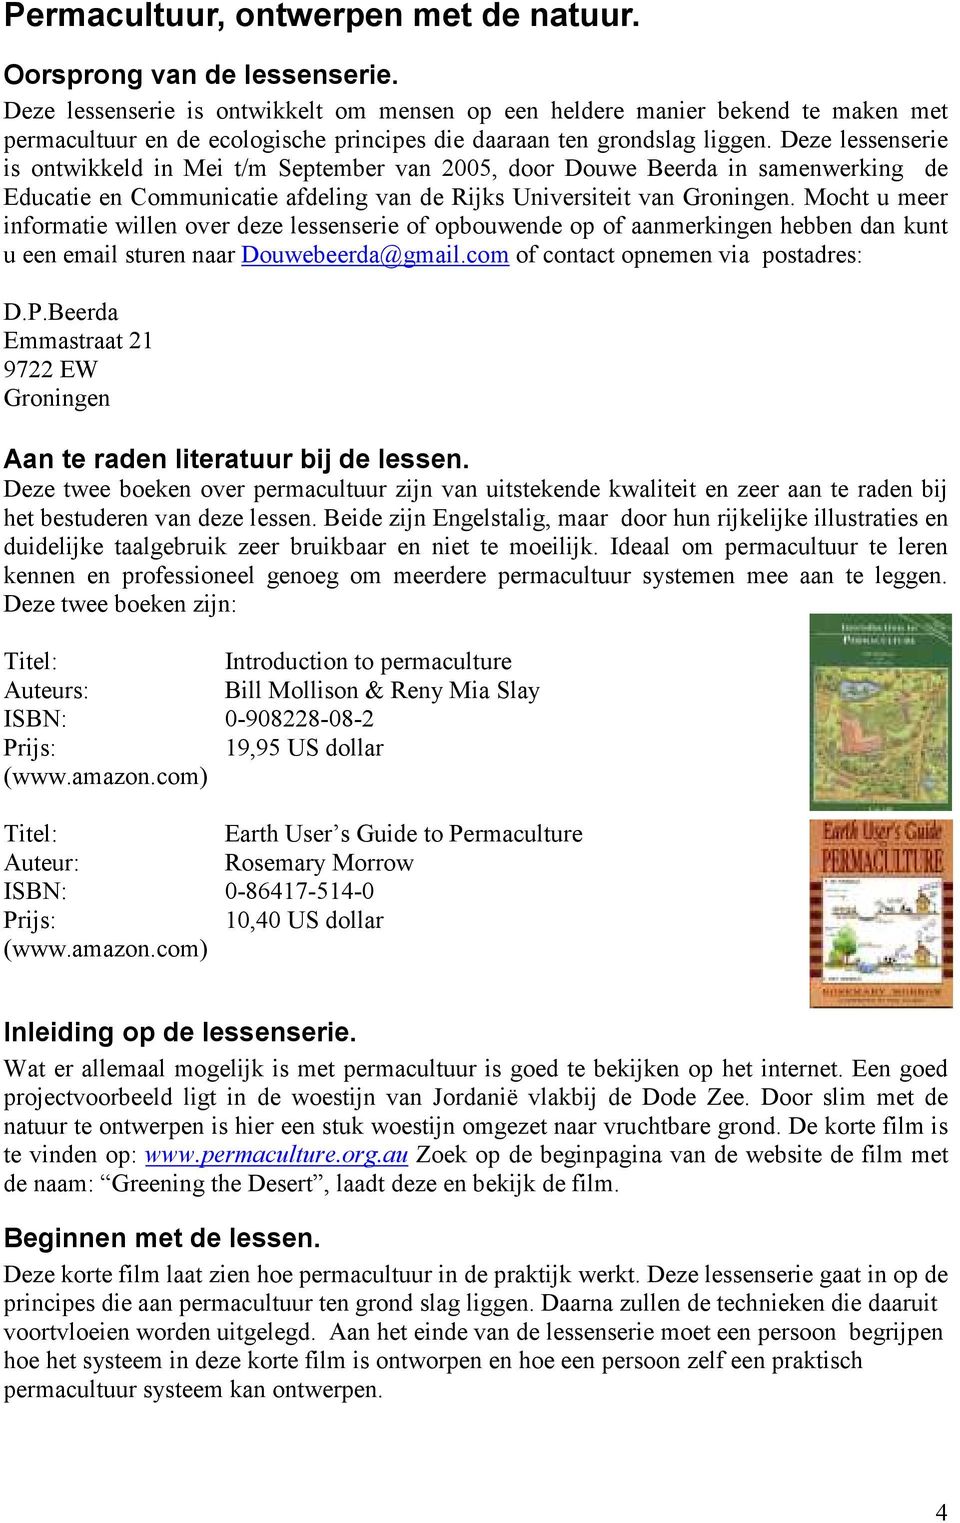 Deze lessenserie is ontwikkeld in Mei t/m September van 2005, door Douwe Beerda in samenwerking de Educatie en Communicatie afdeling van de Rijks Universiteit van Groningen.